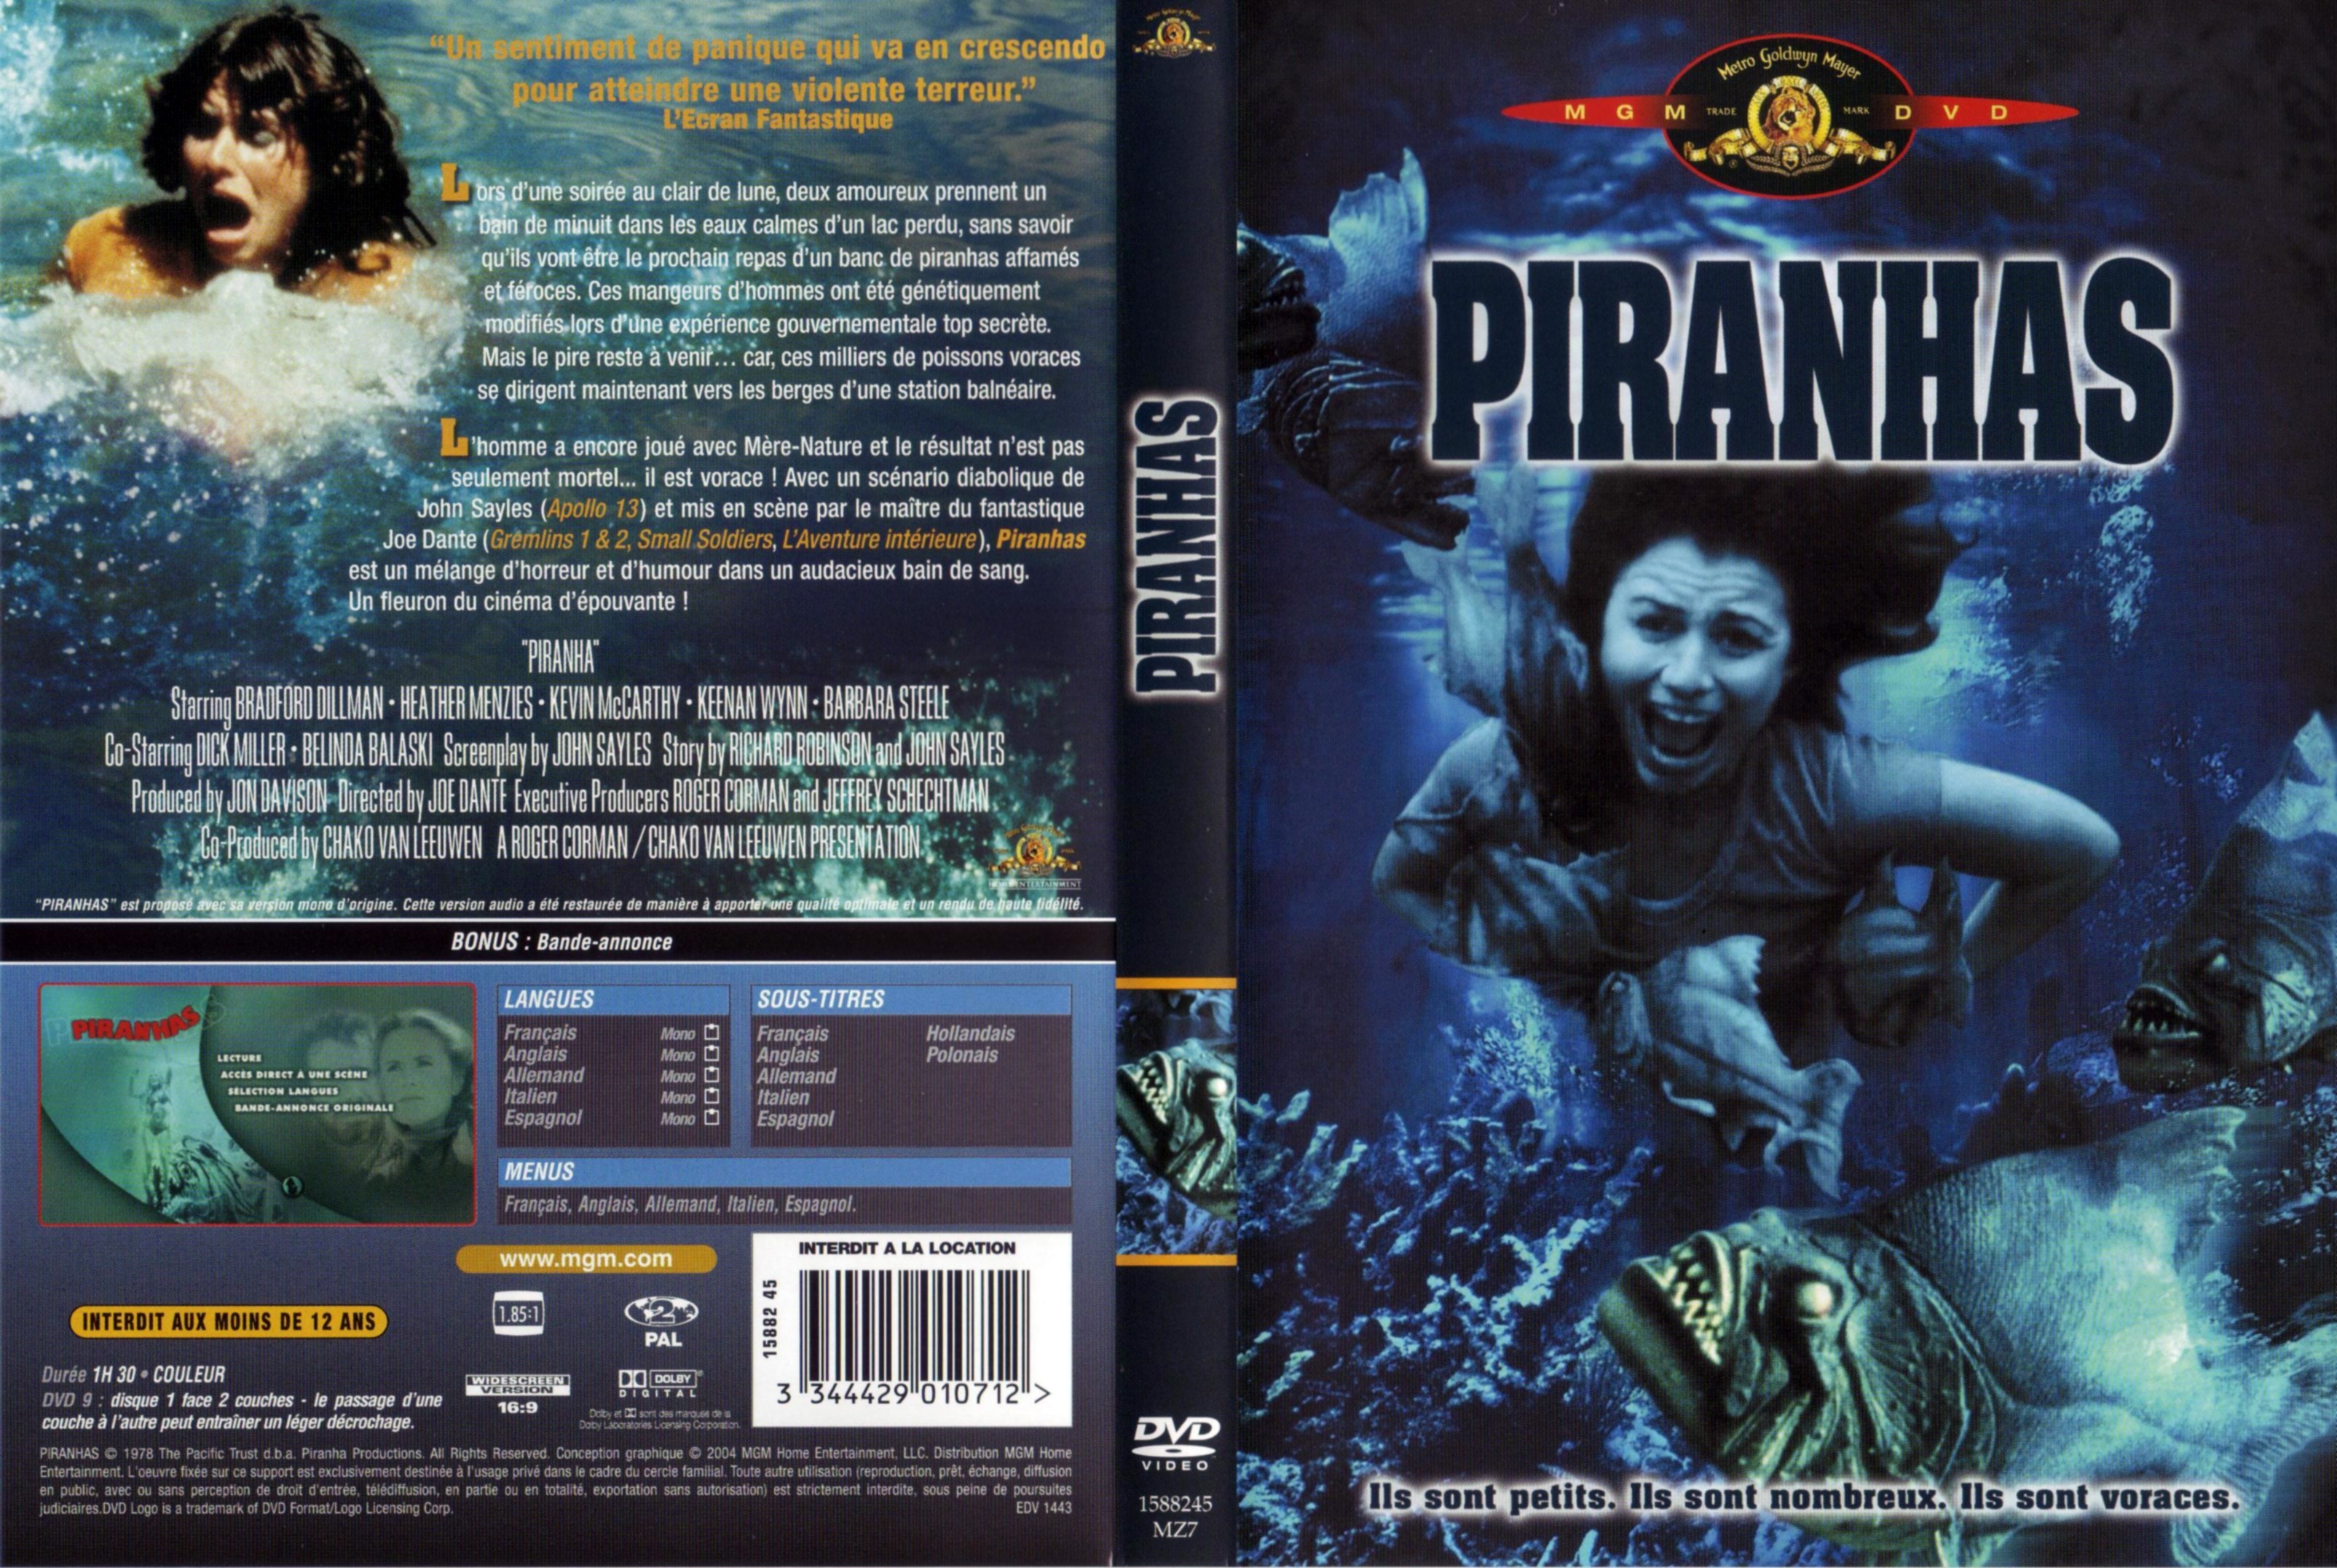 Jaquette DVD Piranhas